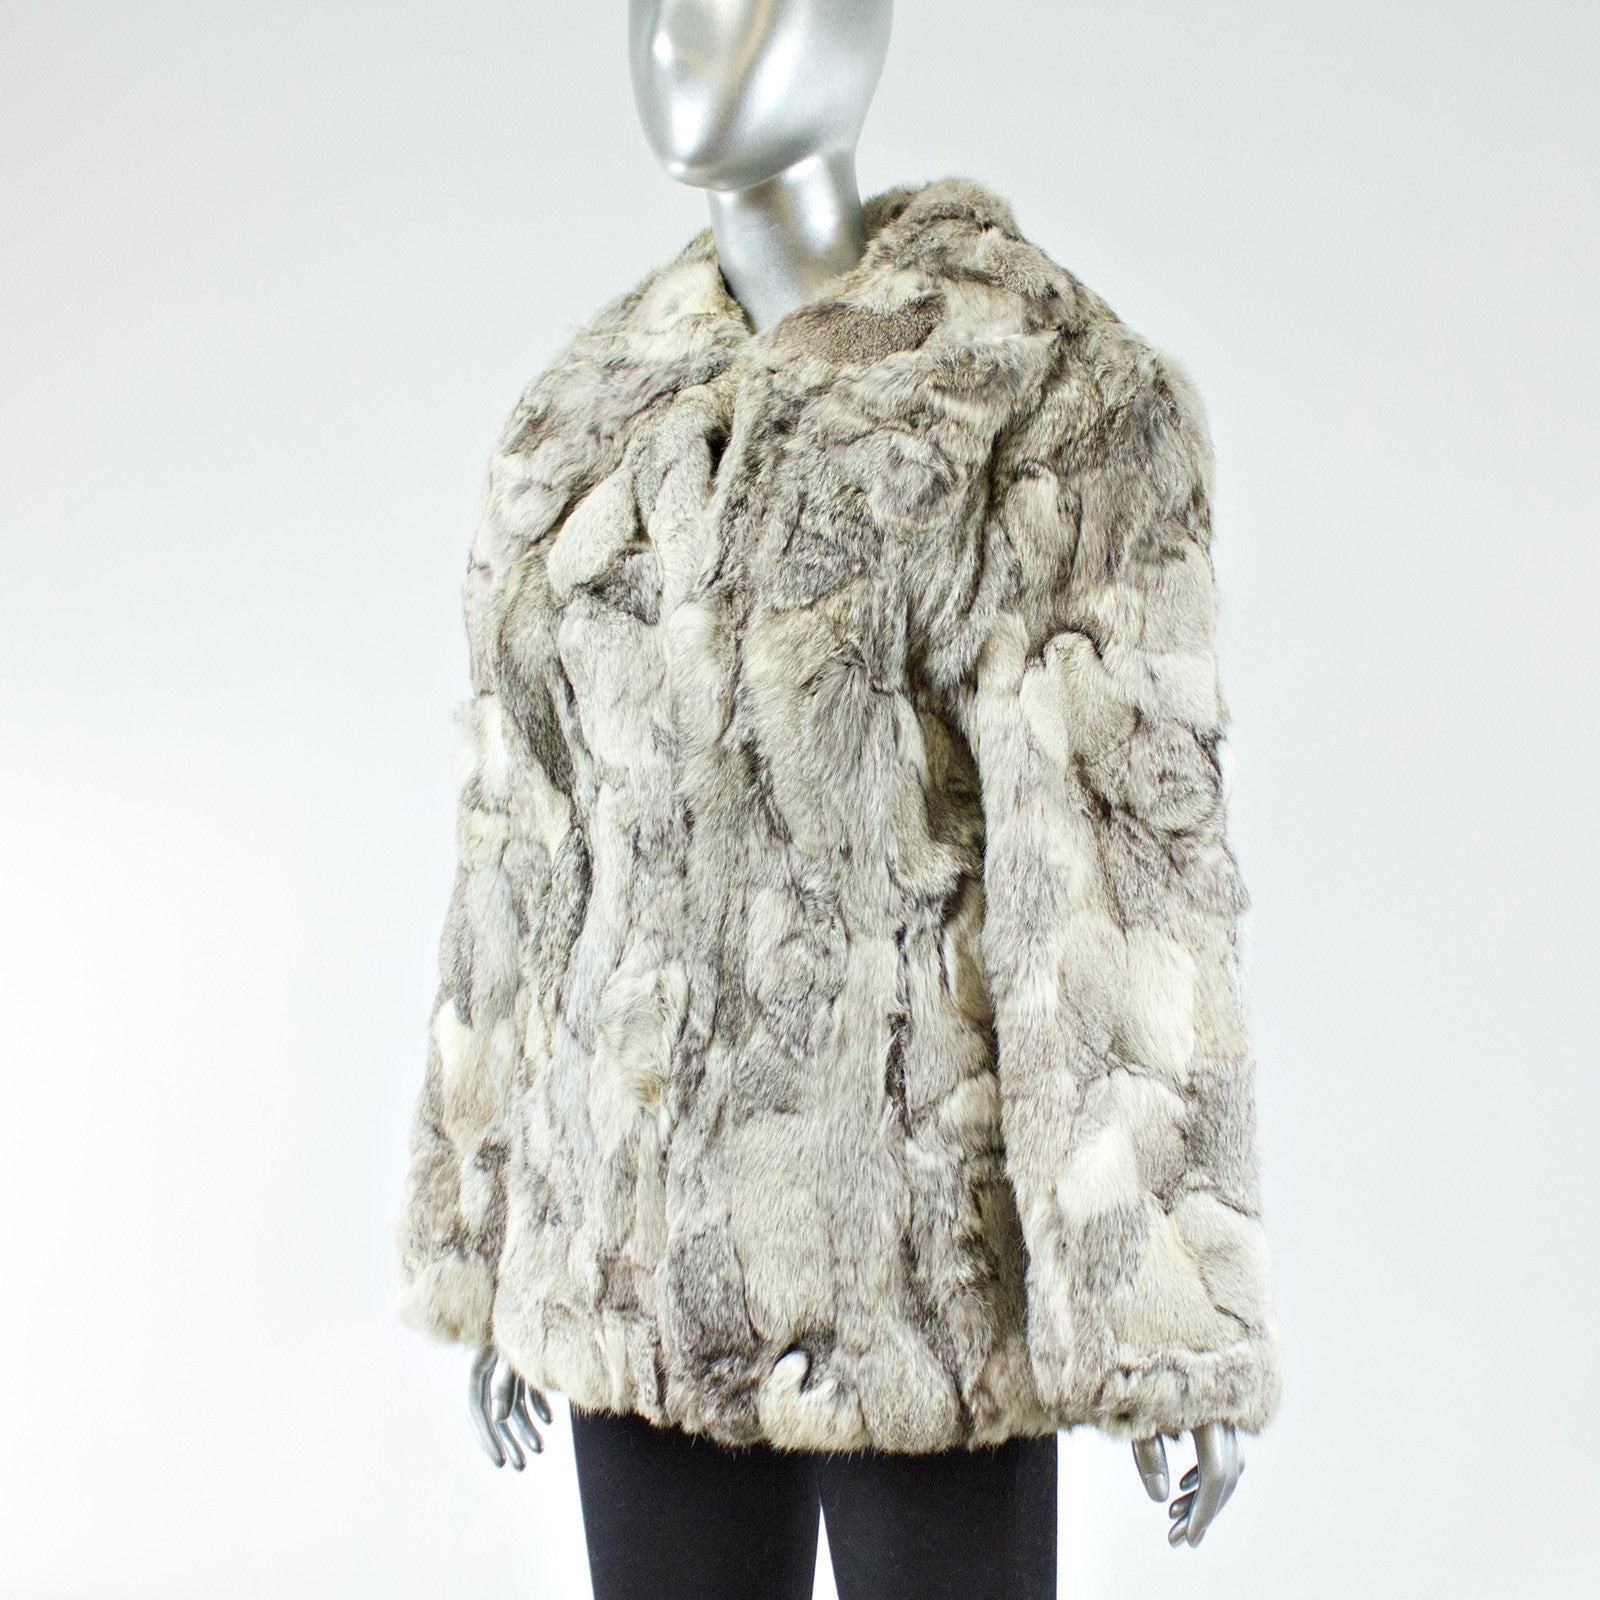 Vintage Rabbit Fur & Cashmere Coat, Authentic & Vintage